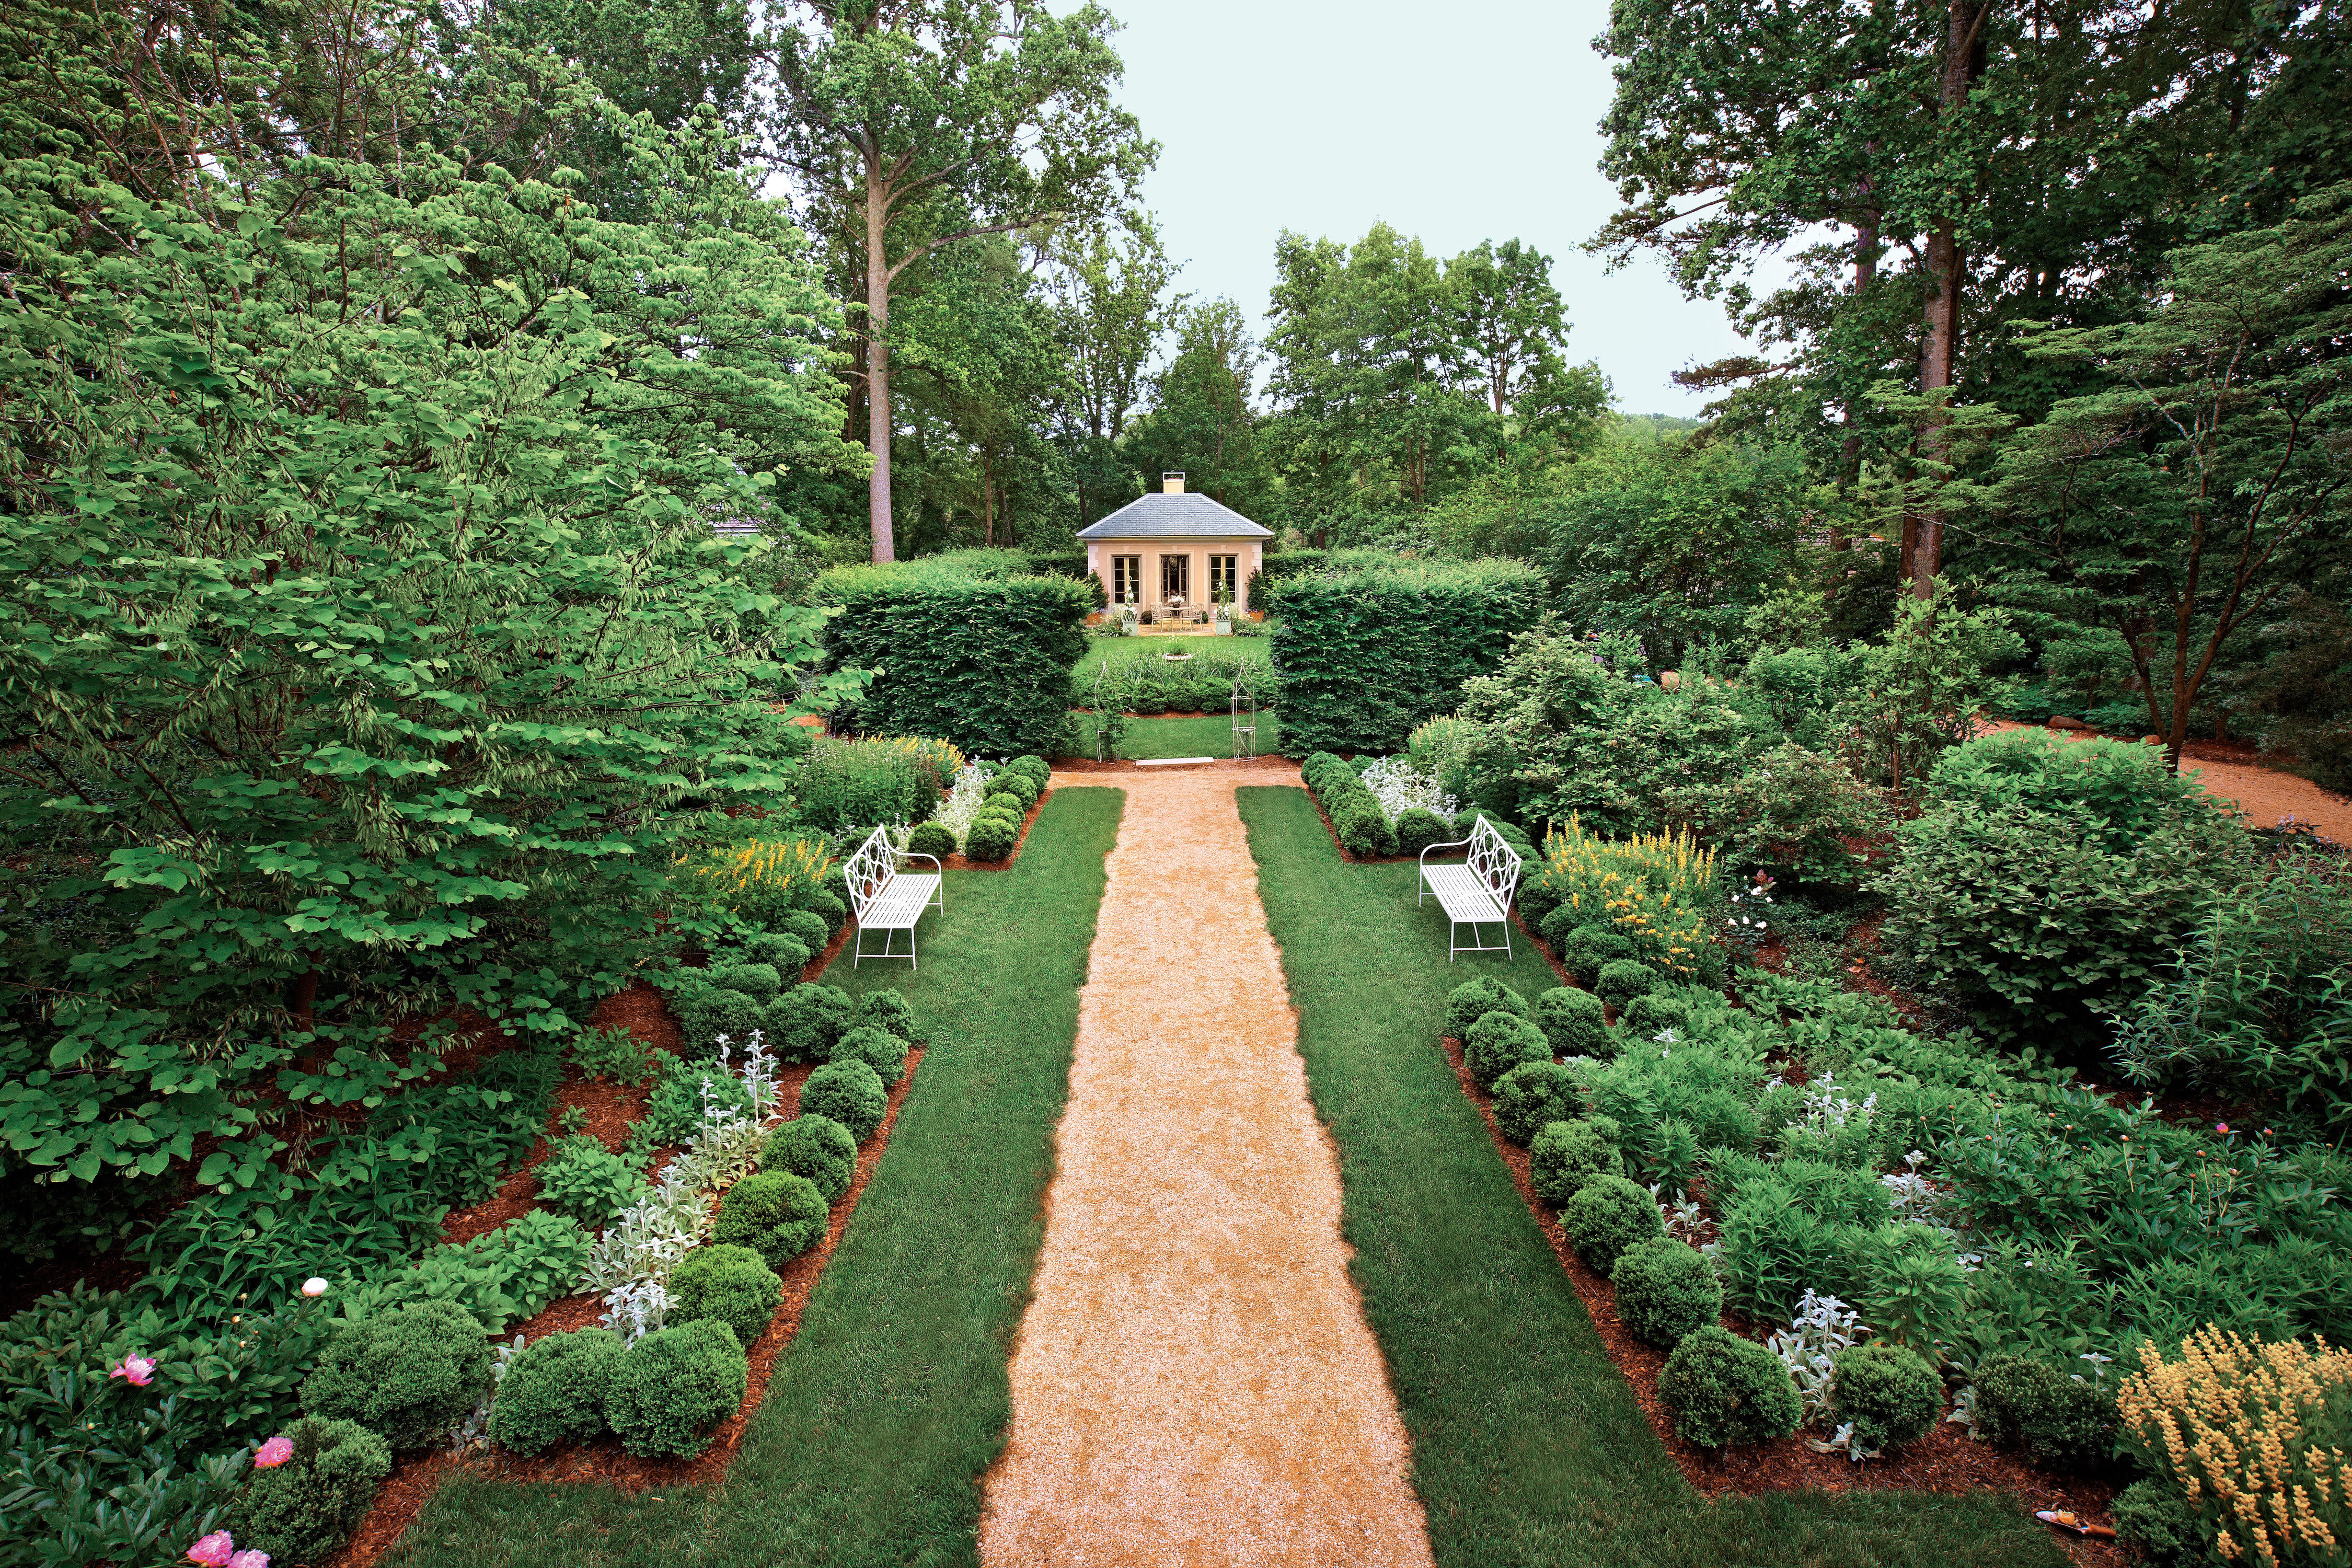 Tour A Classical Virginia Garden